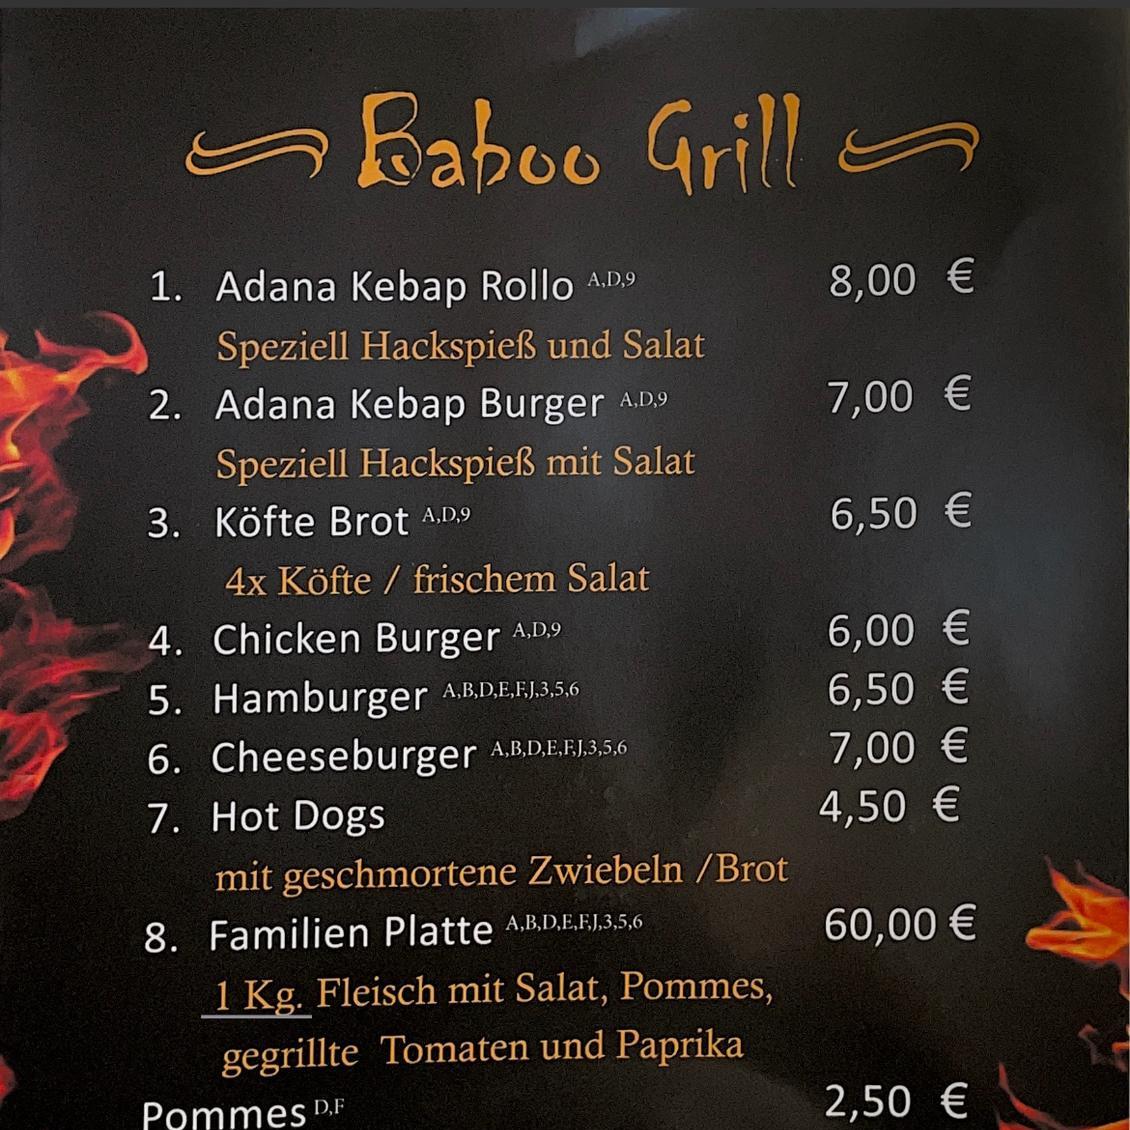 Restaurant "BabooGrill" in Vechta